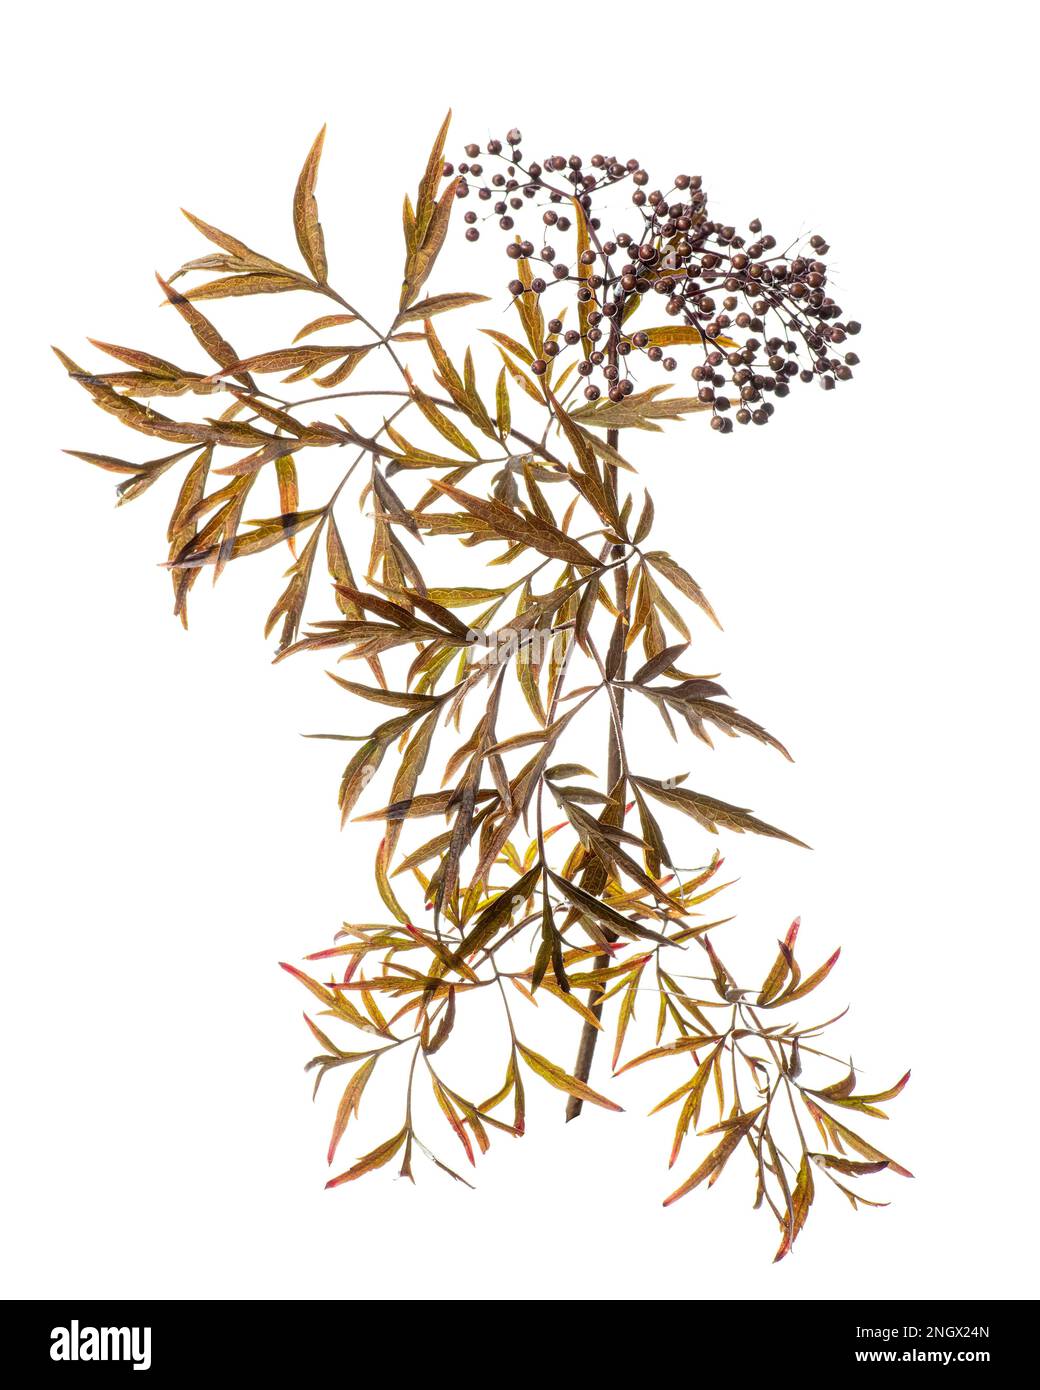 Elder (Sambucus nigra), shrub, berry, white background Stock Photo